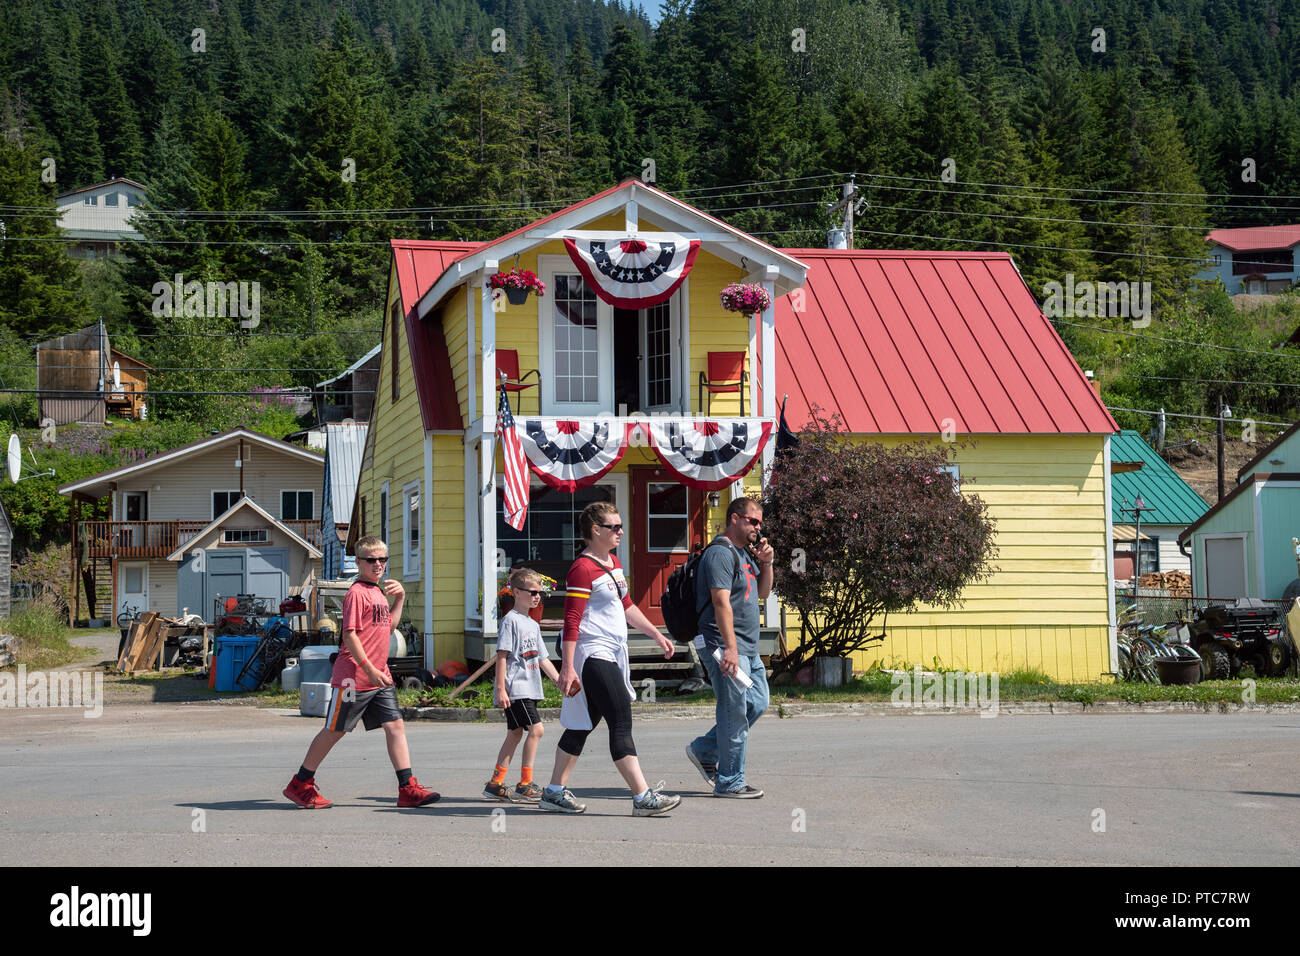 Famille de touristes près de la maison en bois coloré avec drapeaux, Amecan Hoonah, Alaska, USA Banque D'Images